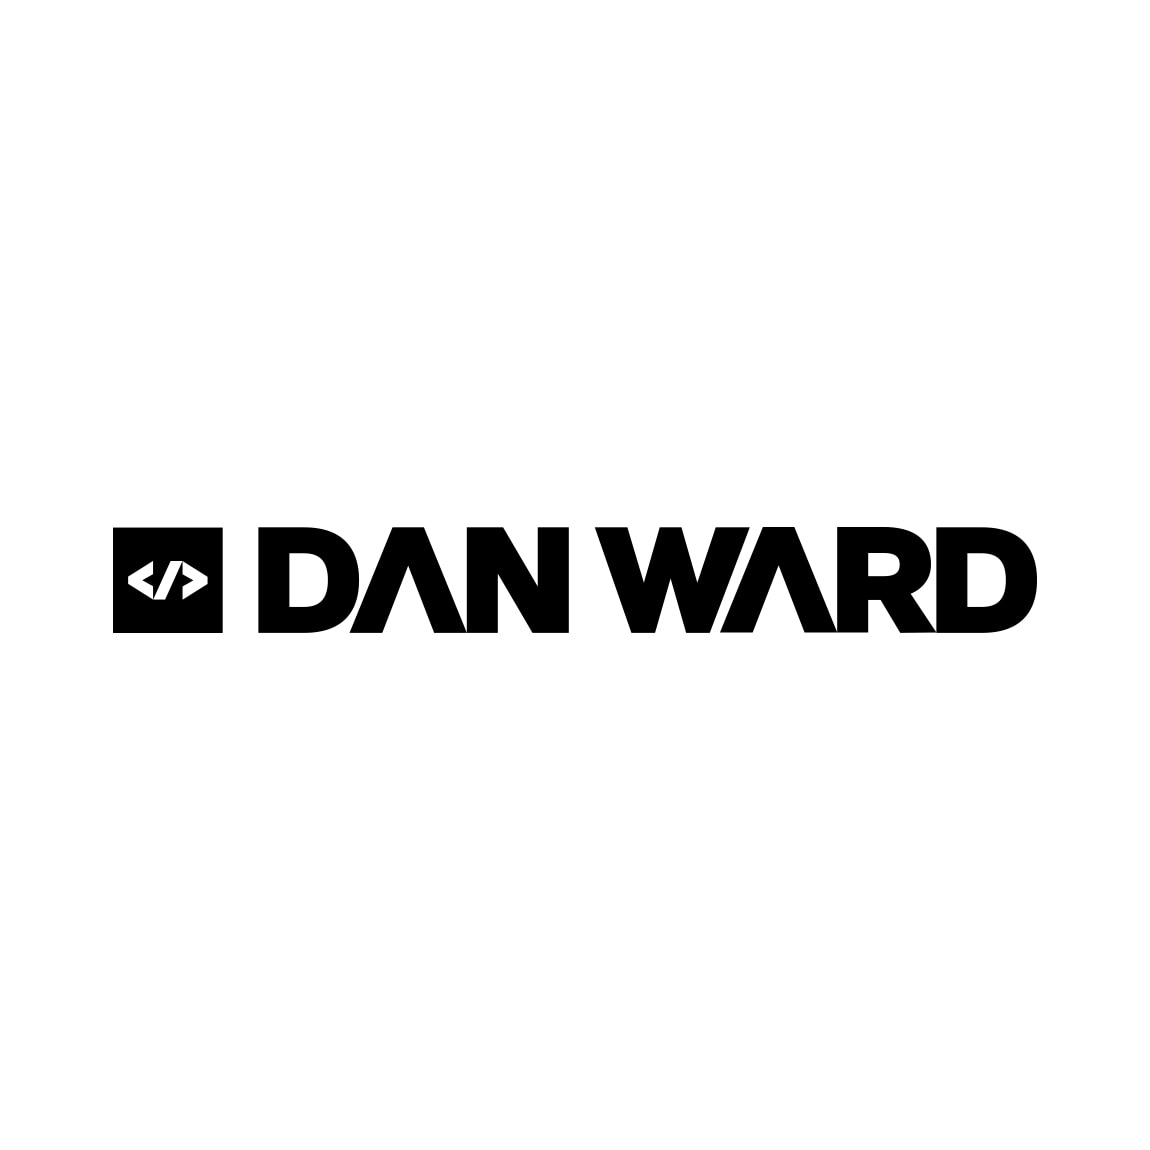 Ward Logo - Dan Ward | Logo Design | Logo Design Services Stoke-on-Trent